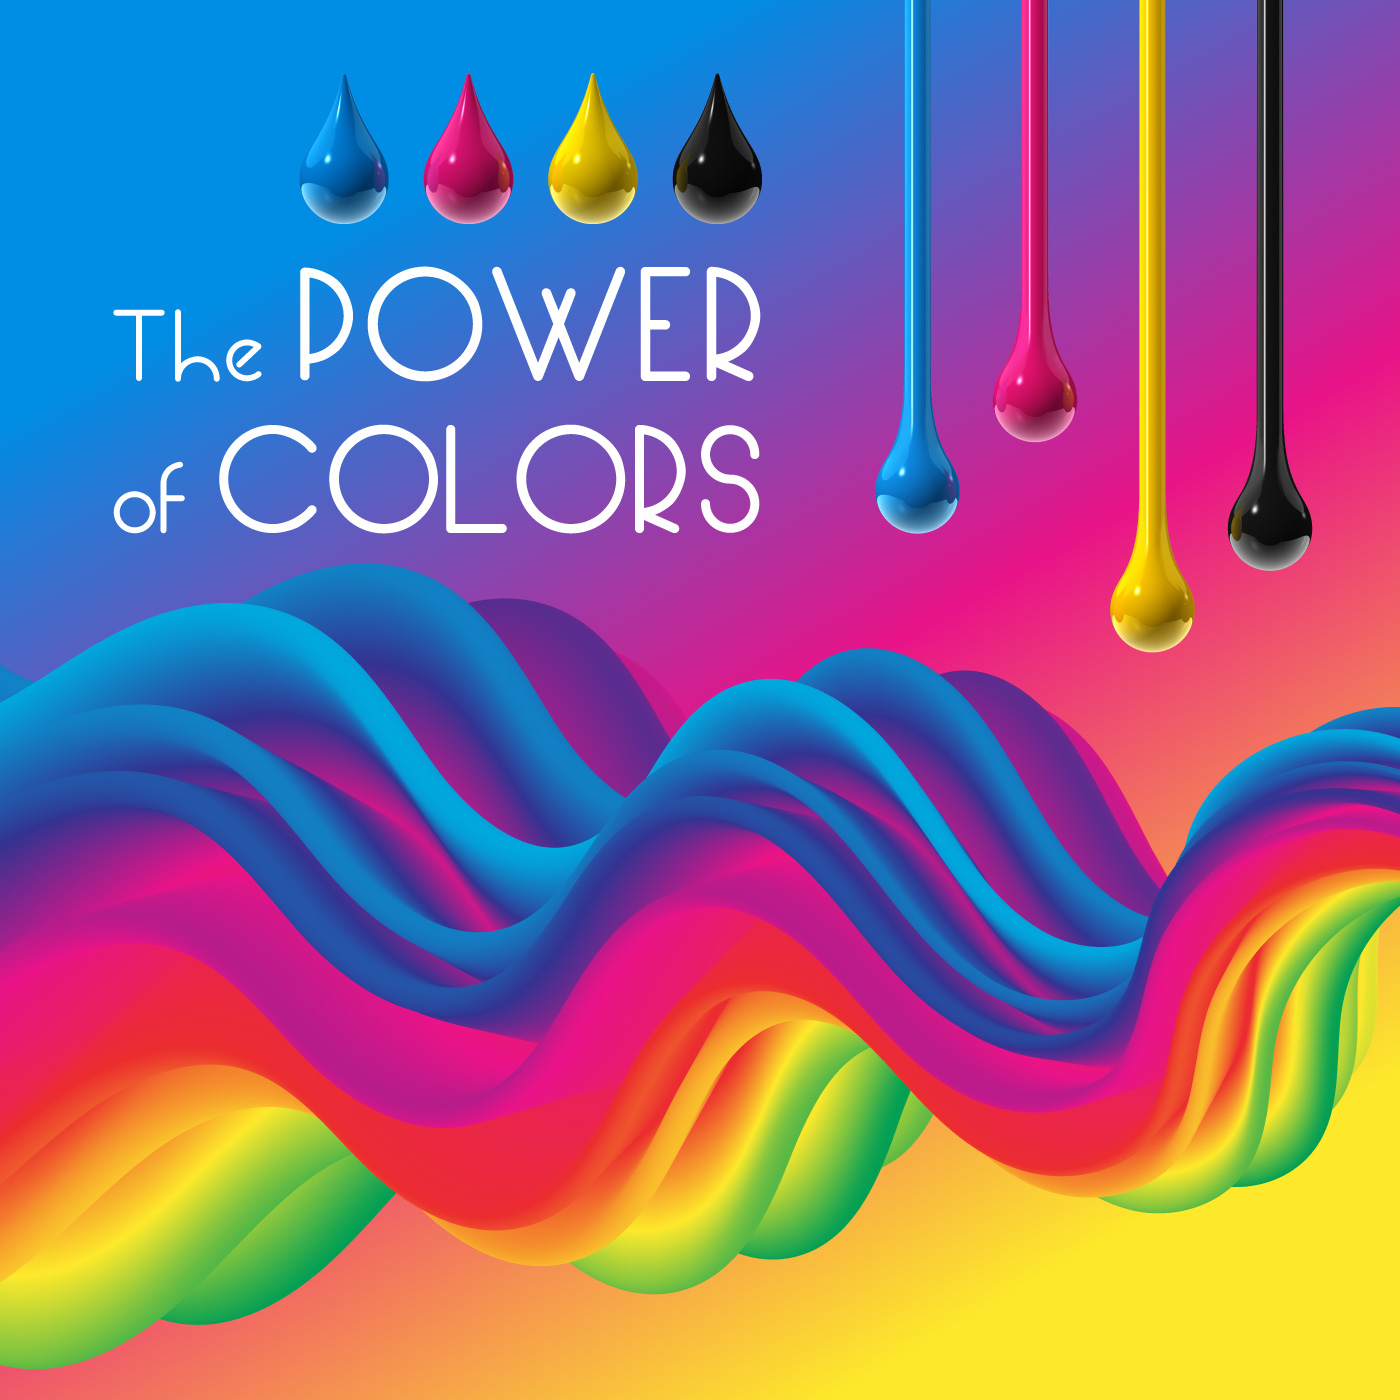 La potenza di un arcobaleno fluido di colori per rappresentare la qualità del materiale di consumo